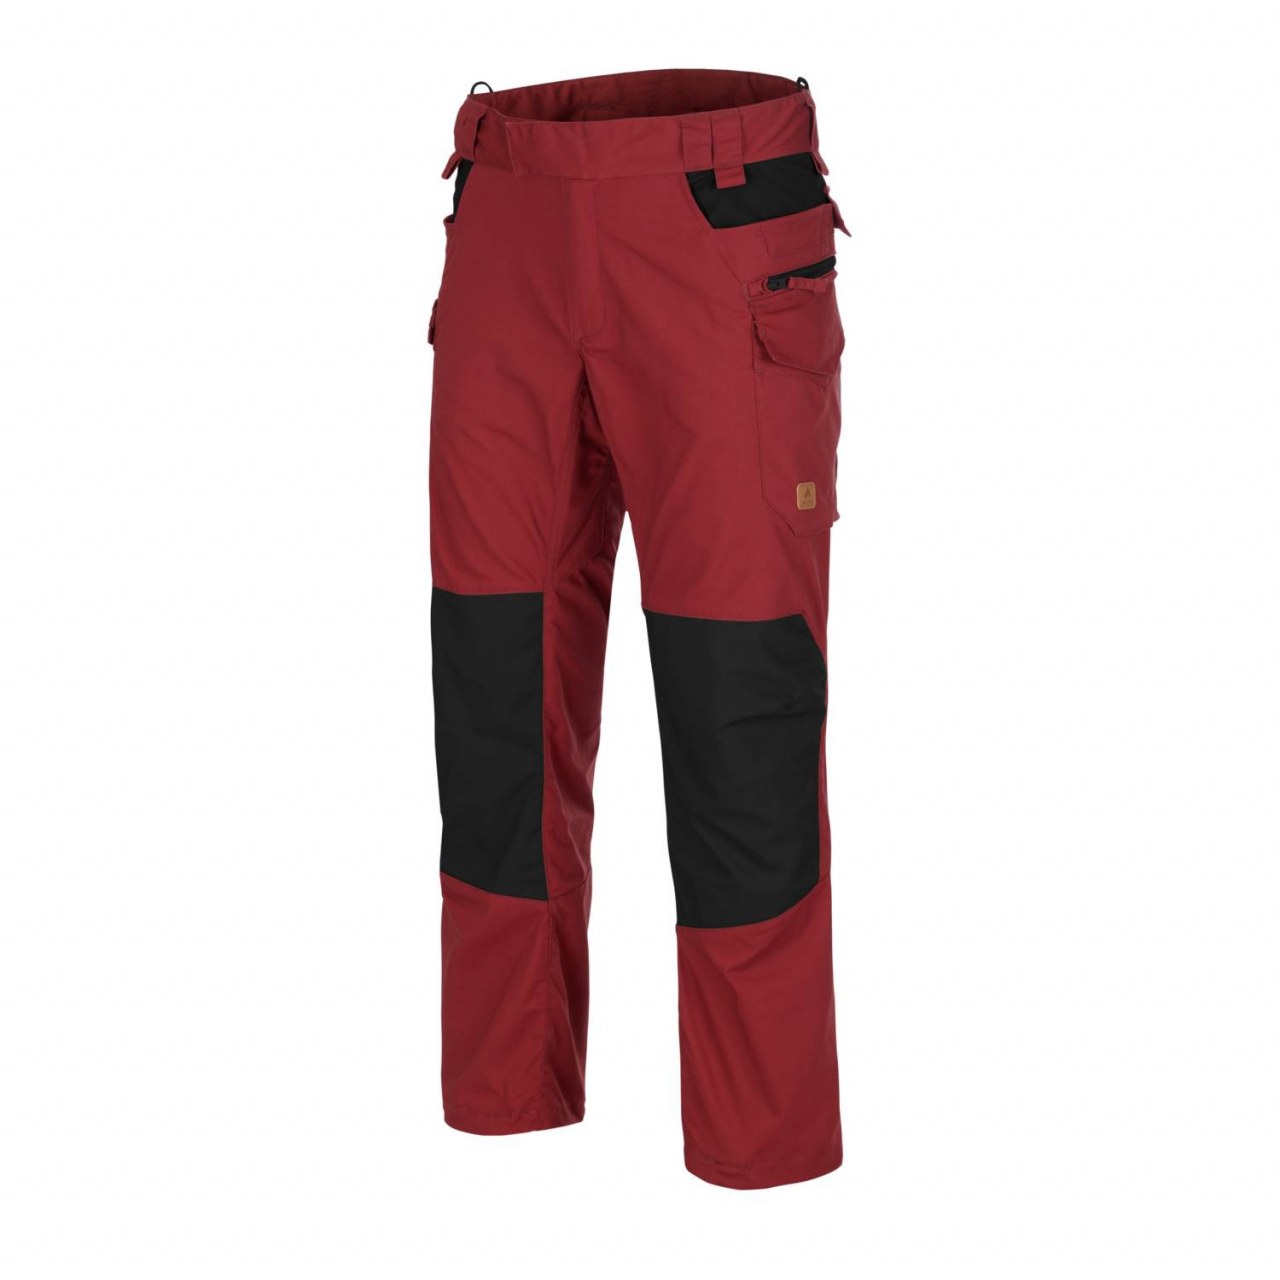 Kalhoty Helikon Pilgrim - červené-černé, XL